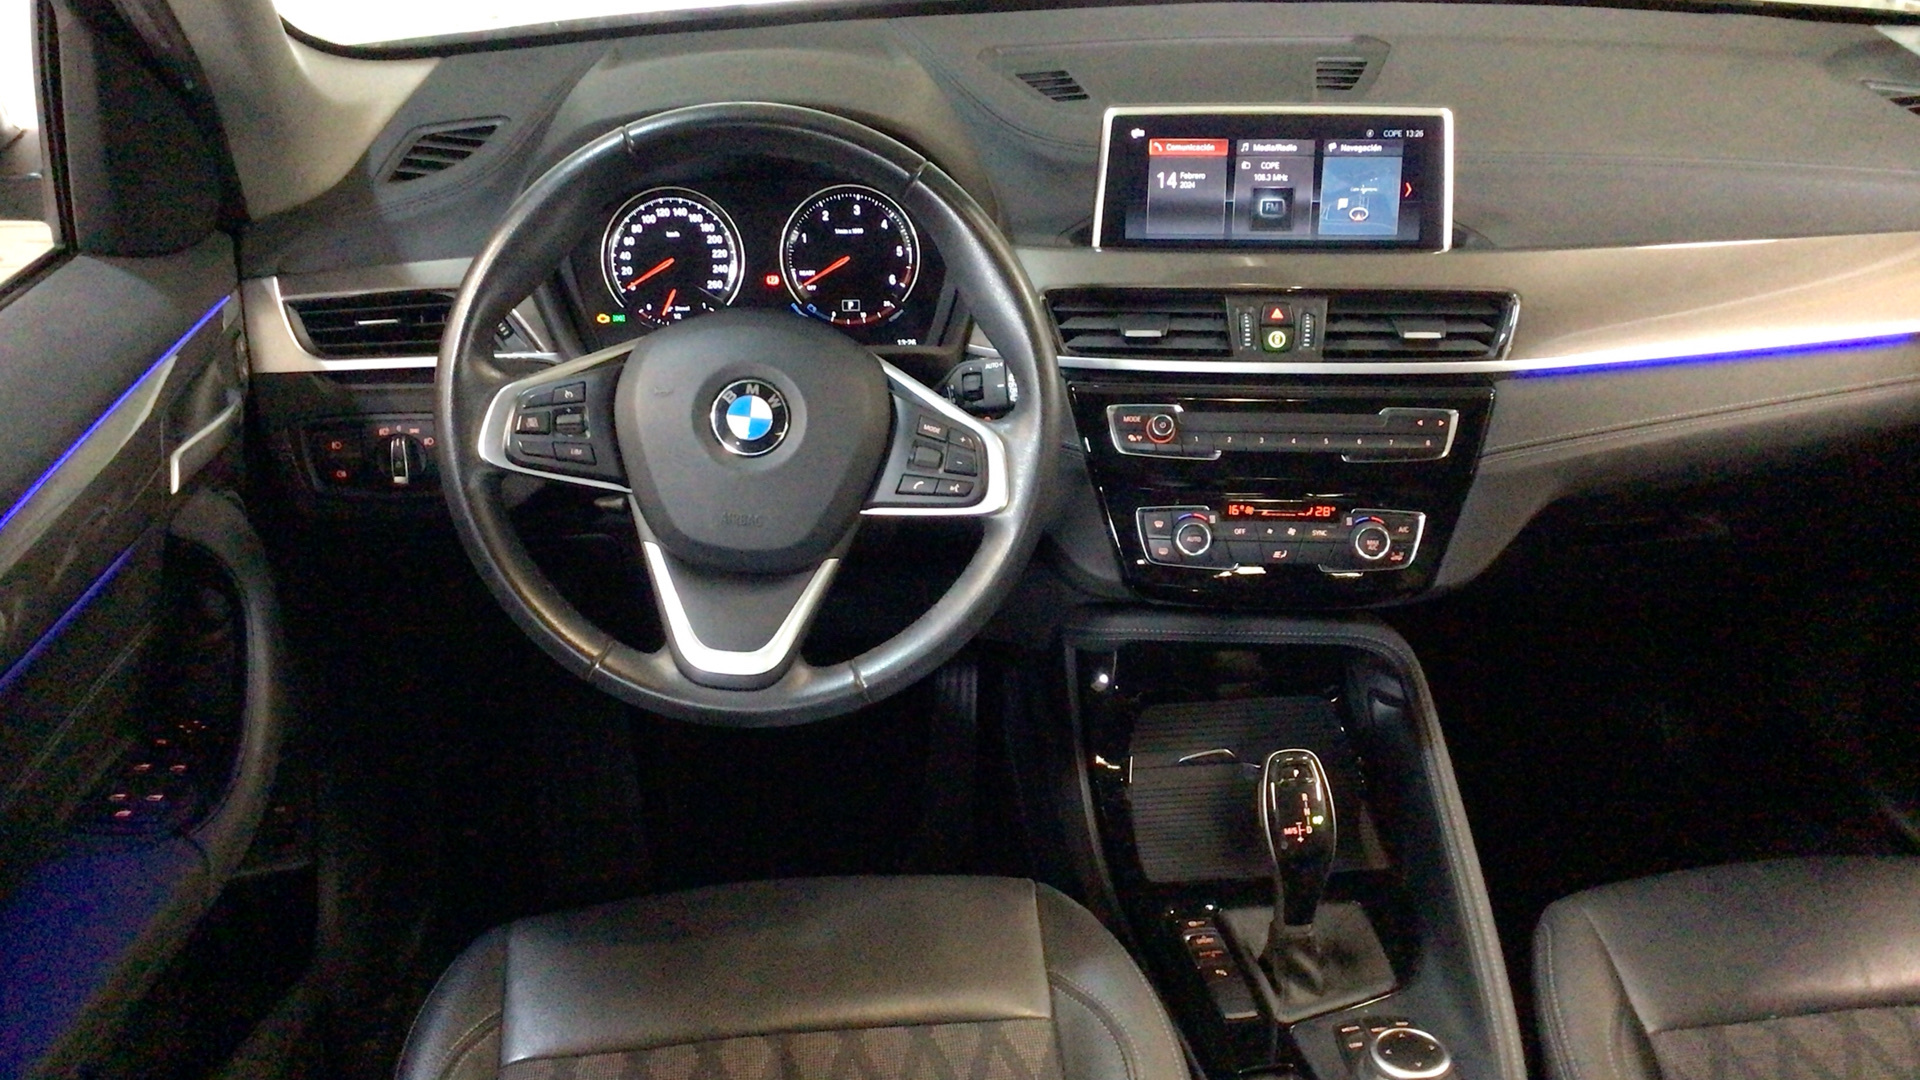 BMW X1 sDrive18d color Negro. Año 2019. 110KW(150CV). Diésel. En concesionario BYmyCAR Madrid - Alcalá de Madrid